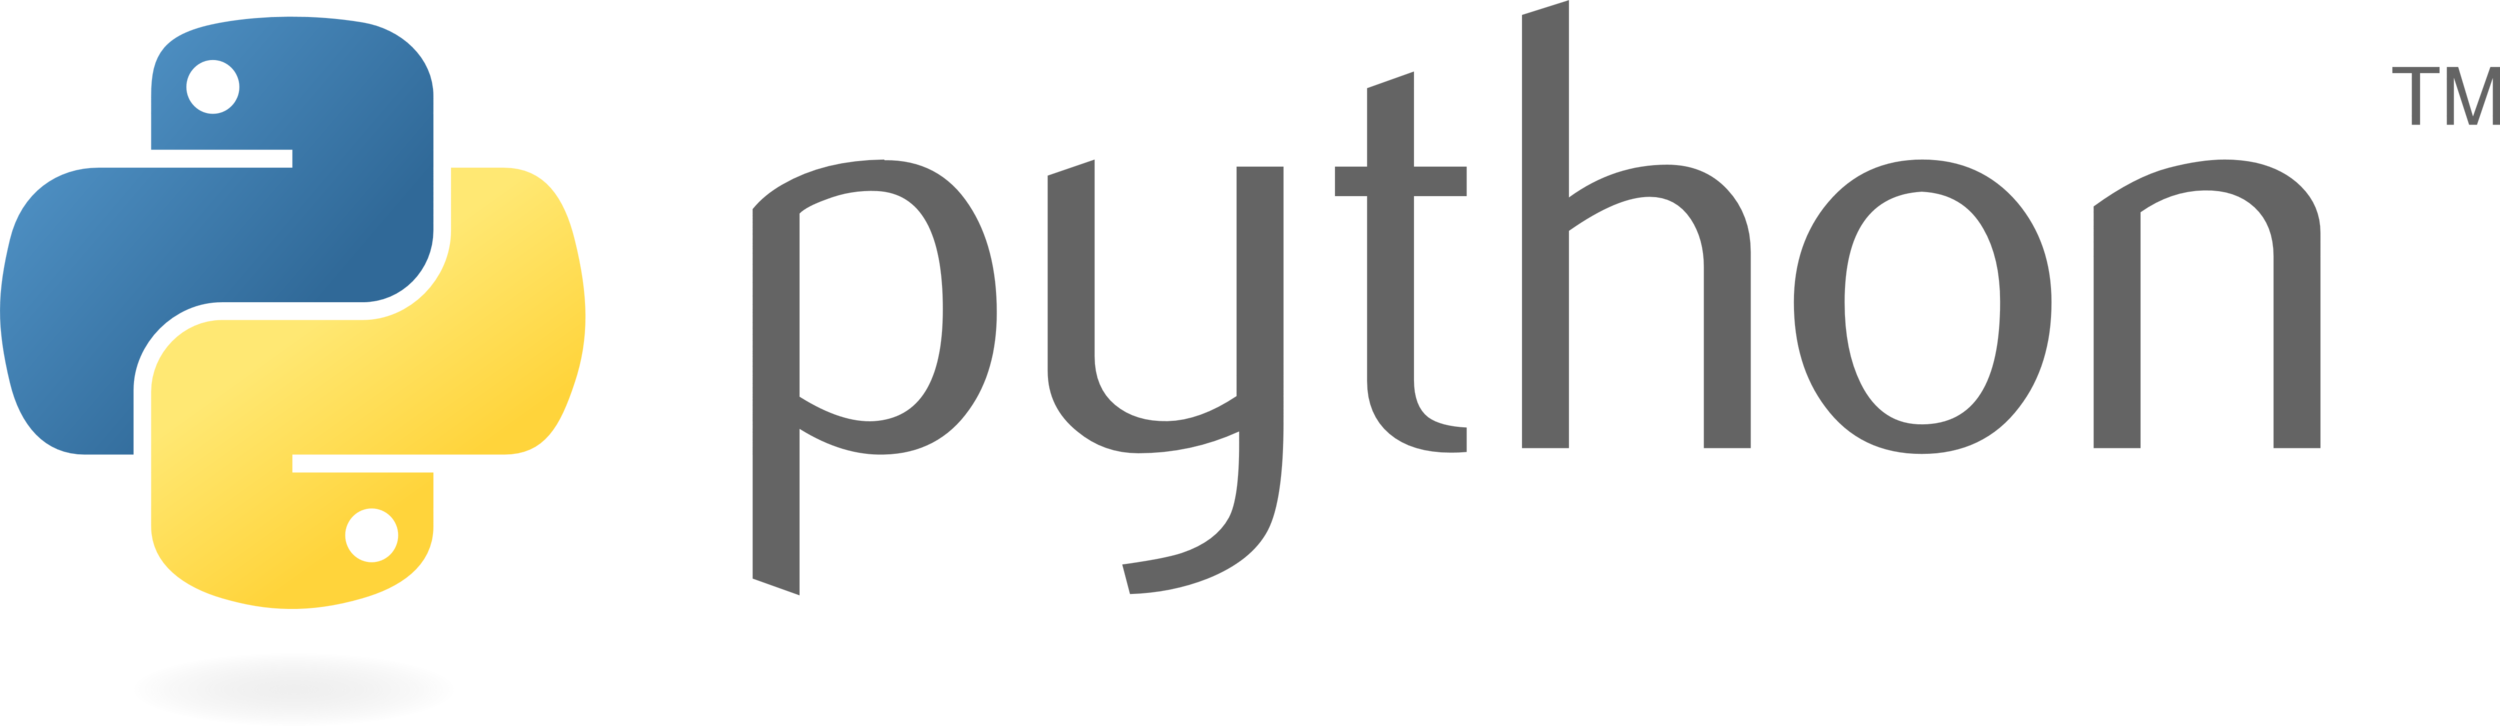 python logo.png